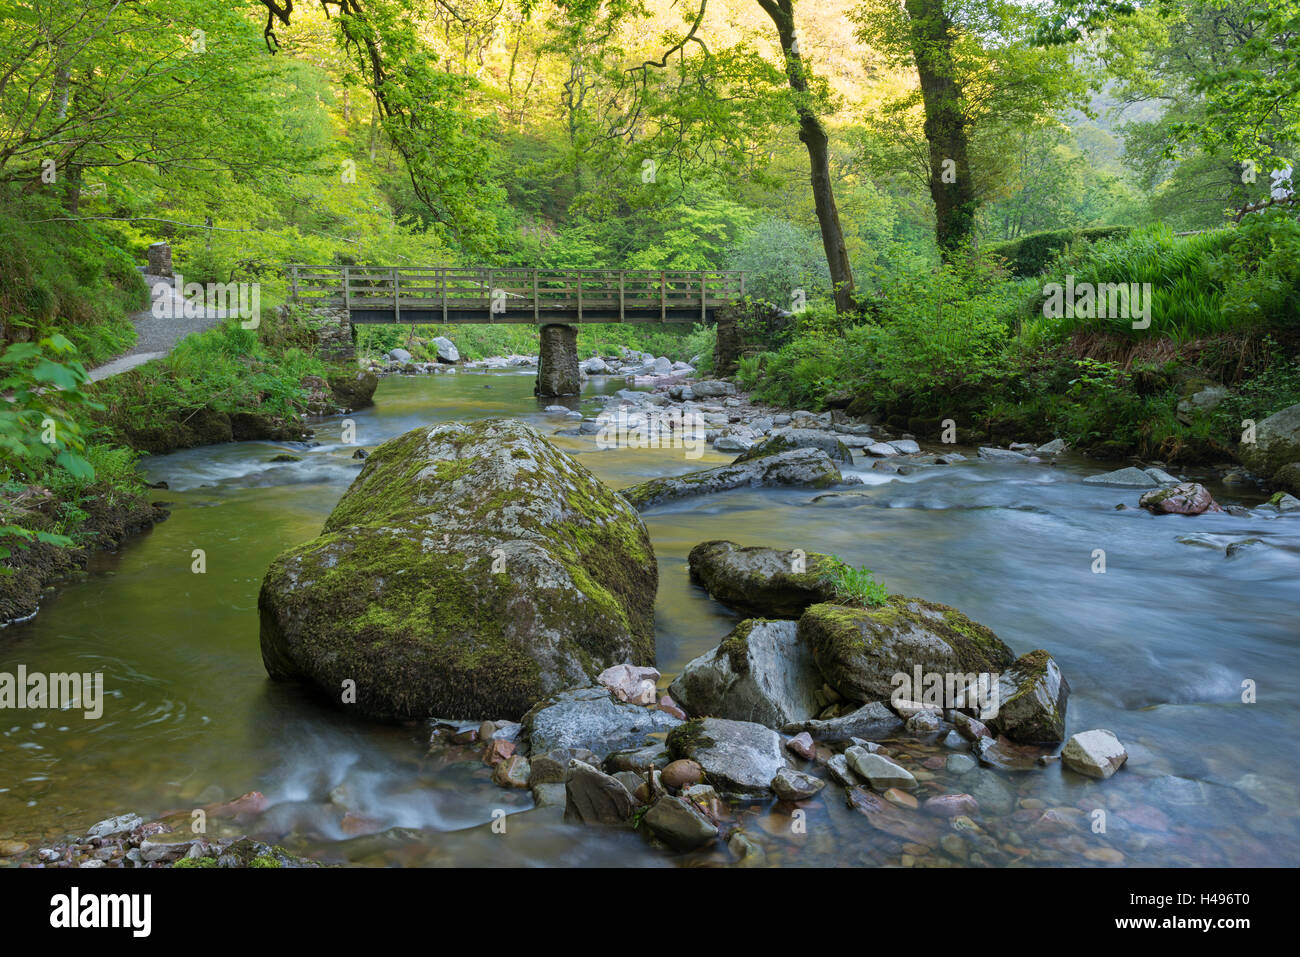 Pont de bois sur la rivière East Lyn à Watersmeet, Exmoor National Park, Devon, Angleterre. Printemps (mai) 2013. Banque D'Images